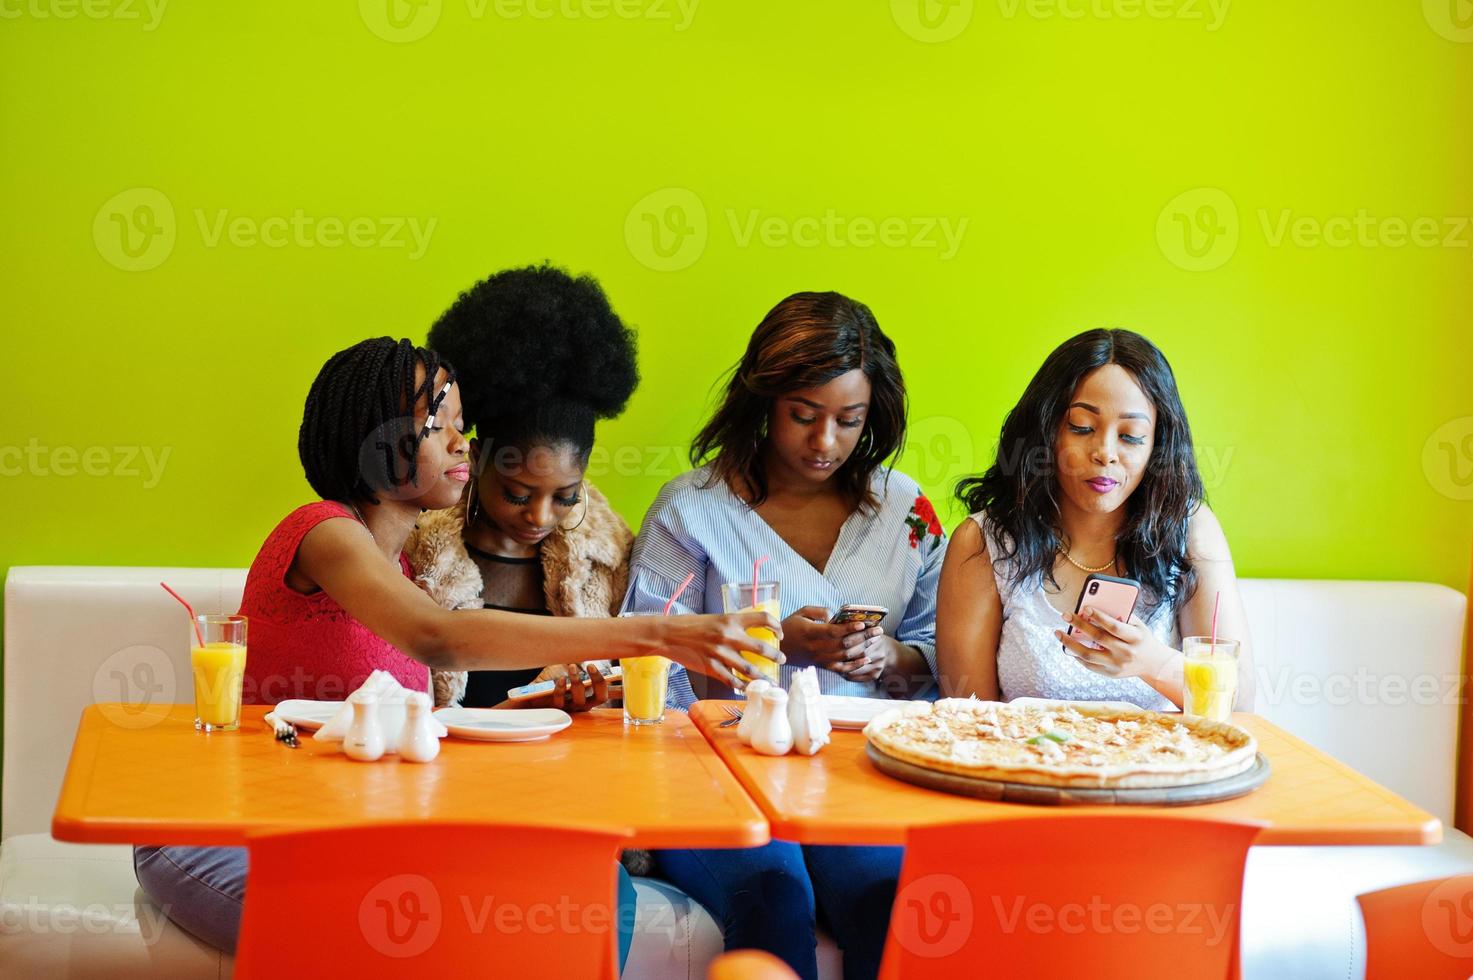 cuatro jóvenes africanas en un restaurante de comida rápida de colores brillantes haciendo fotos de pizza en sus teléfonos móviles.